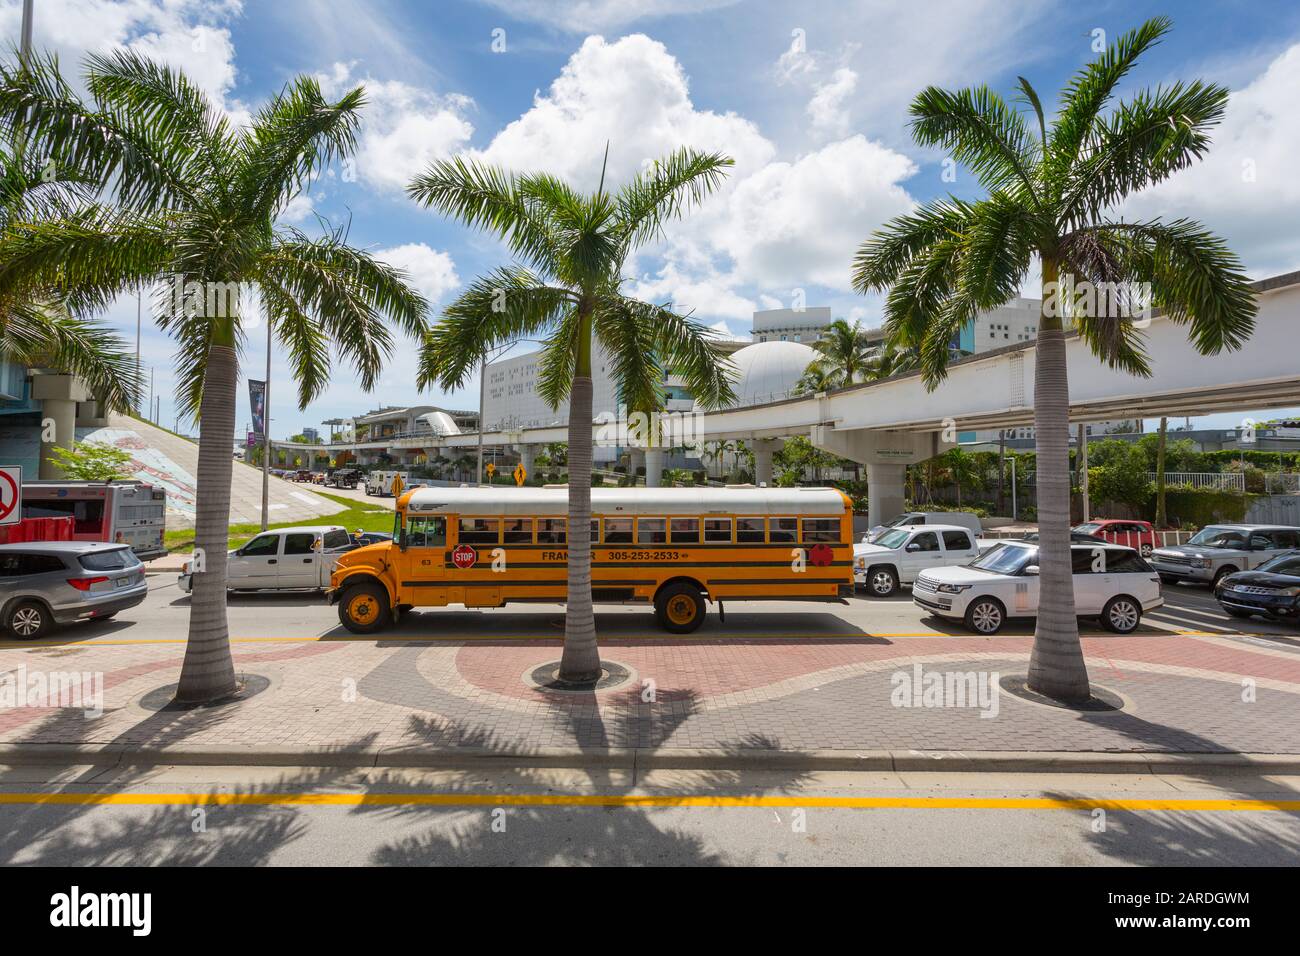 Autobus scolastico nel centro di Miami, Miami, Florida, Stati Uniti d'America, Nord America Foto Stock